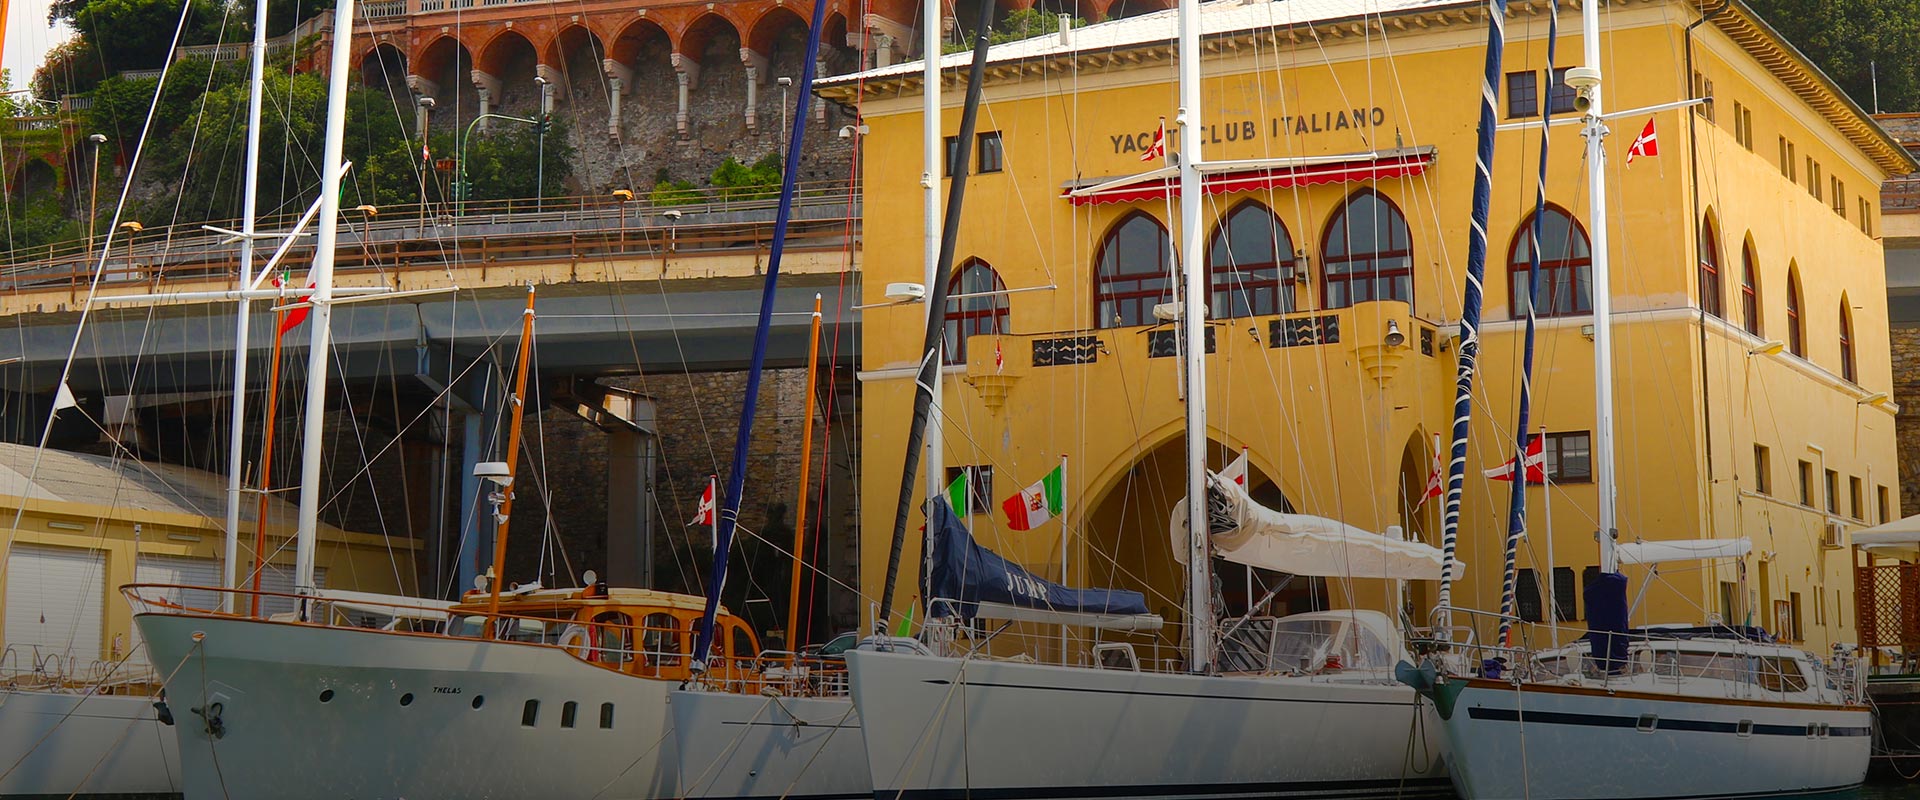 yacht club italiano genova